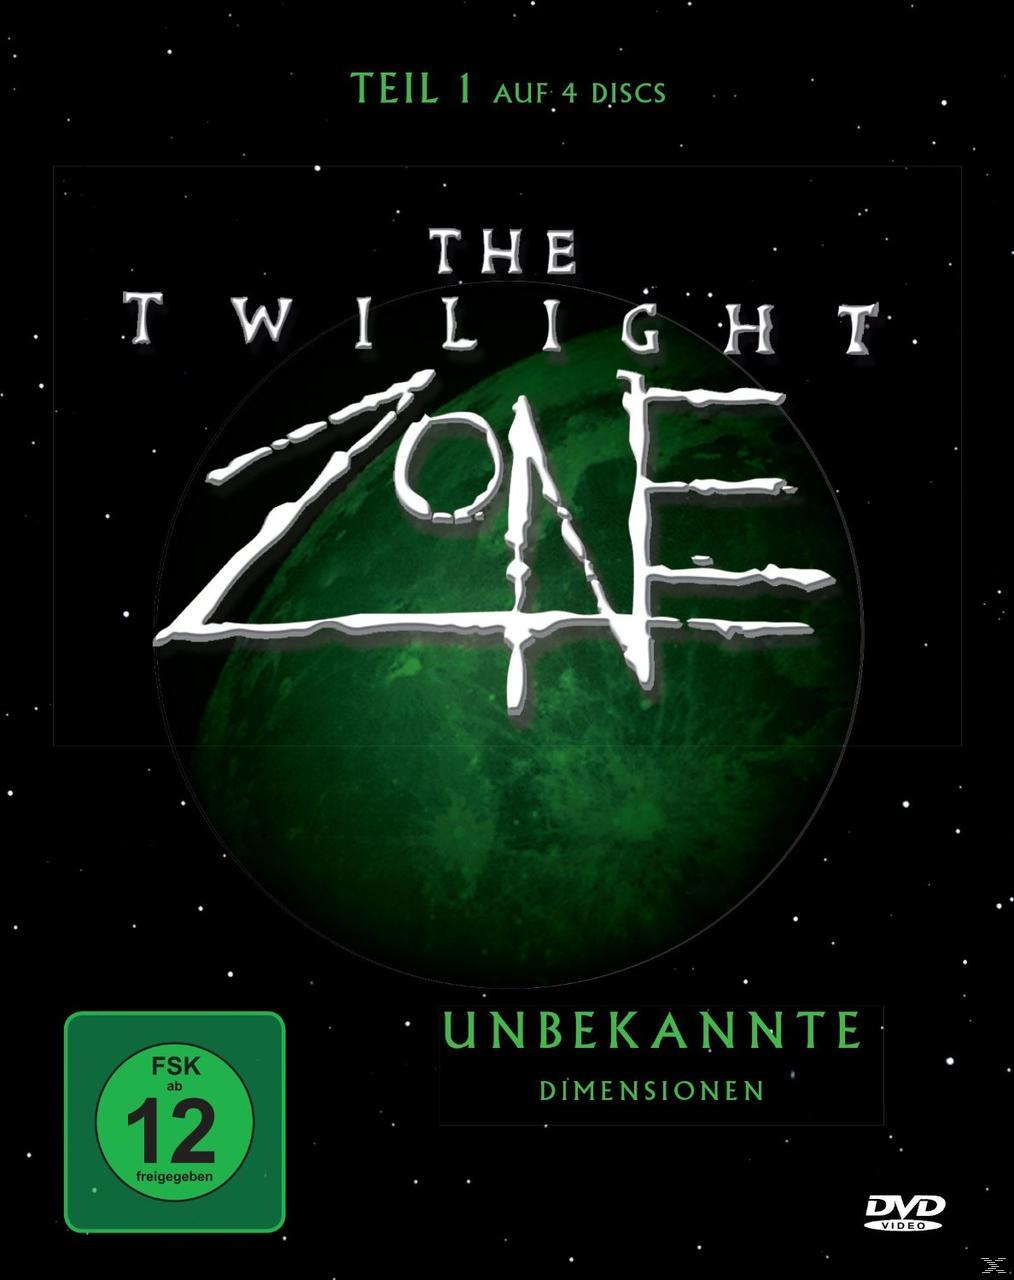 The Twilight Zone 1 - Unbekannte Dimensionen DVD